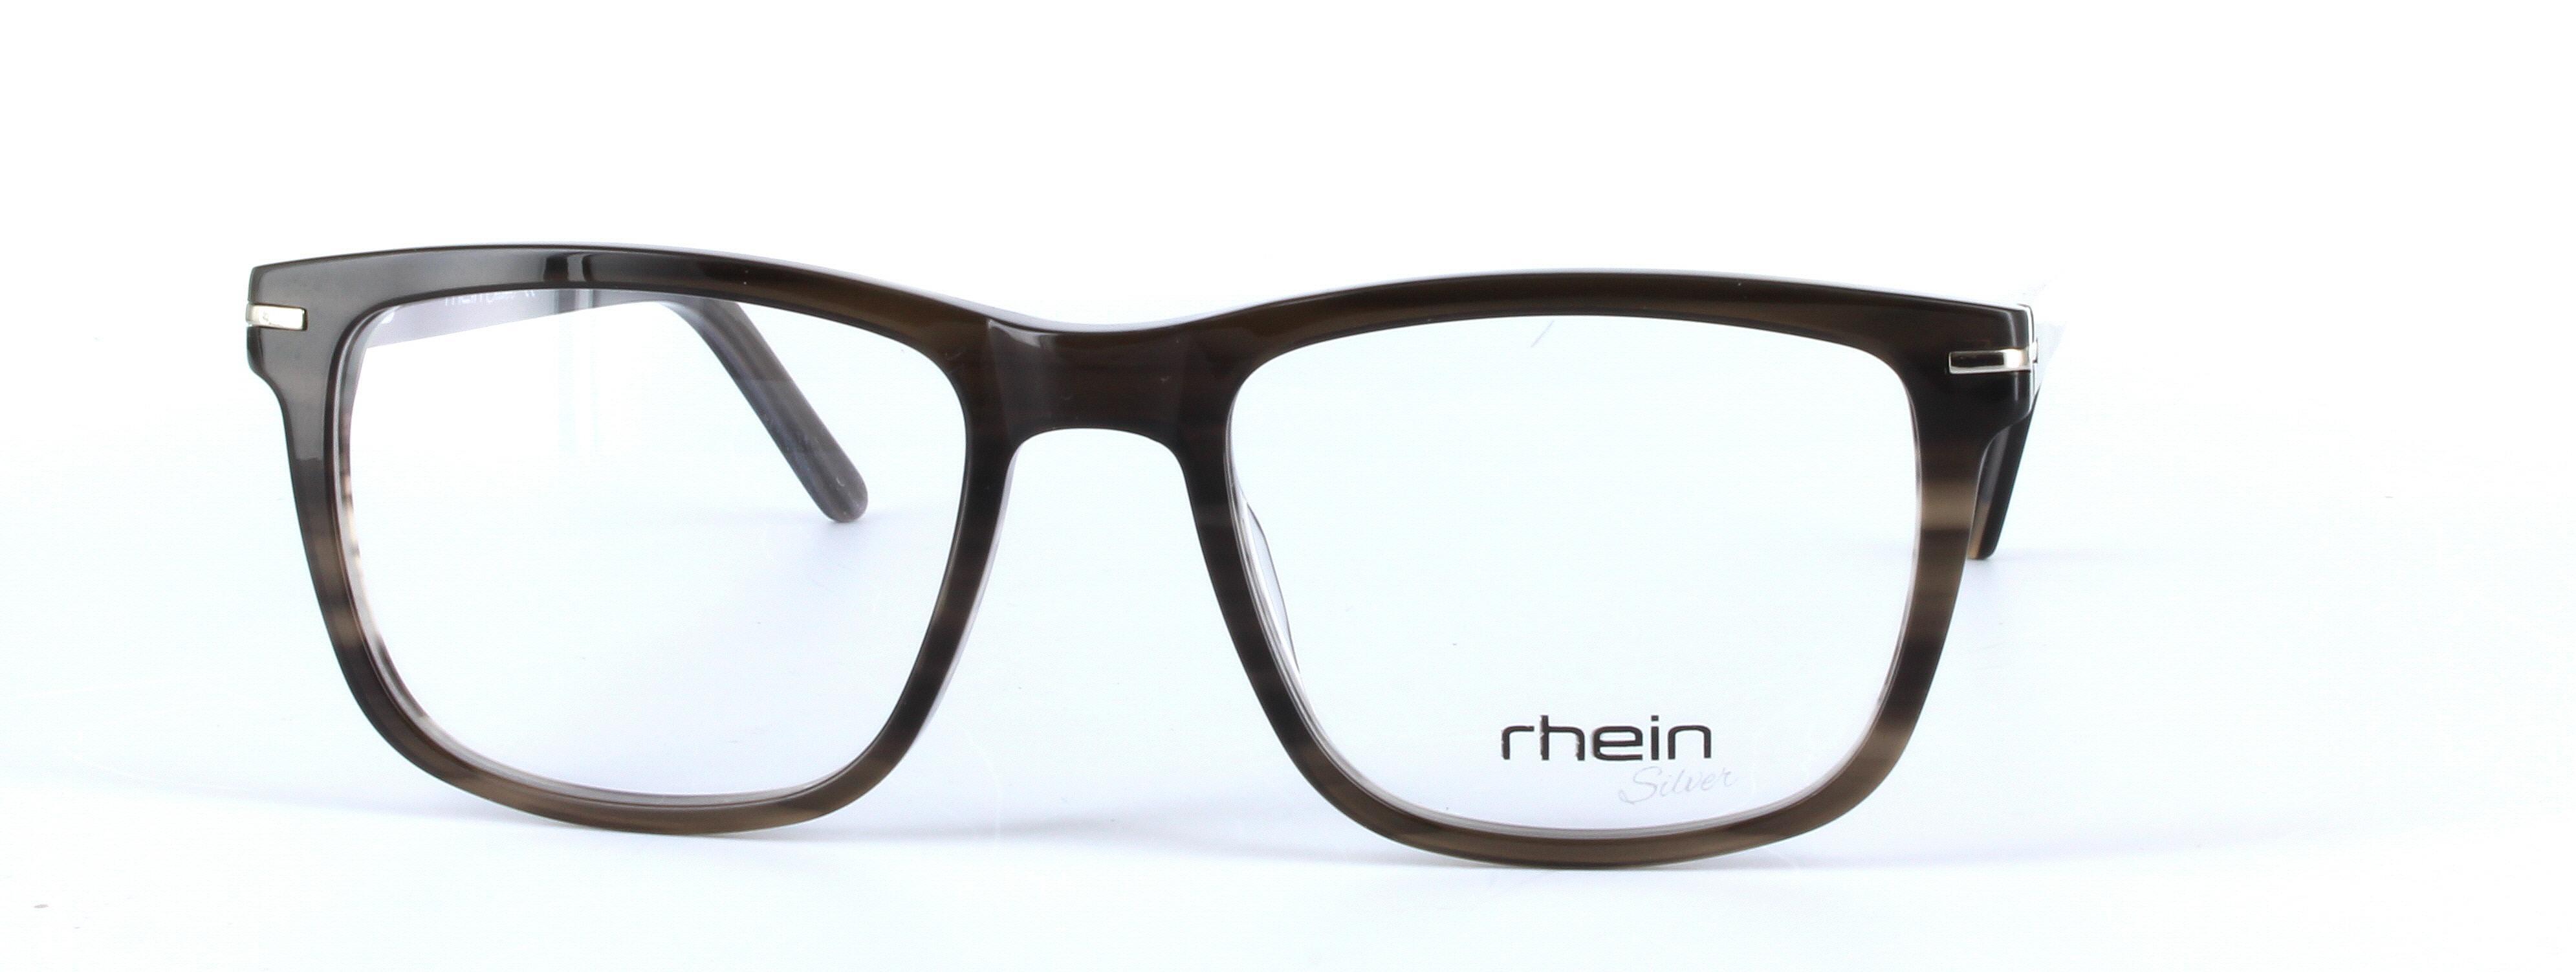 Morgan Grey Full Rim Square Plastic Glasses - Image View 5